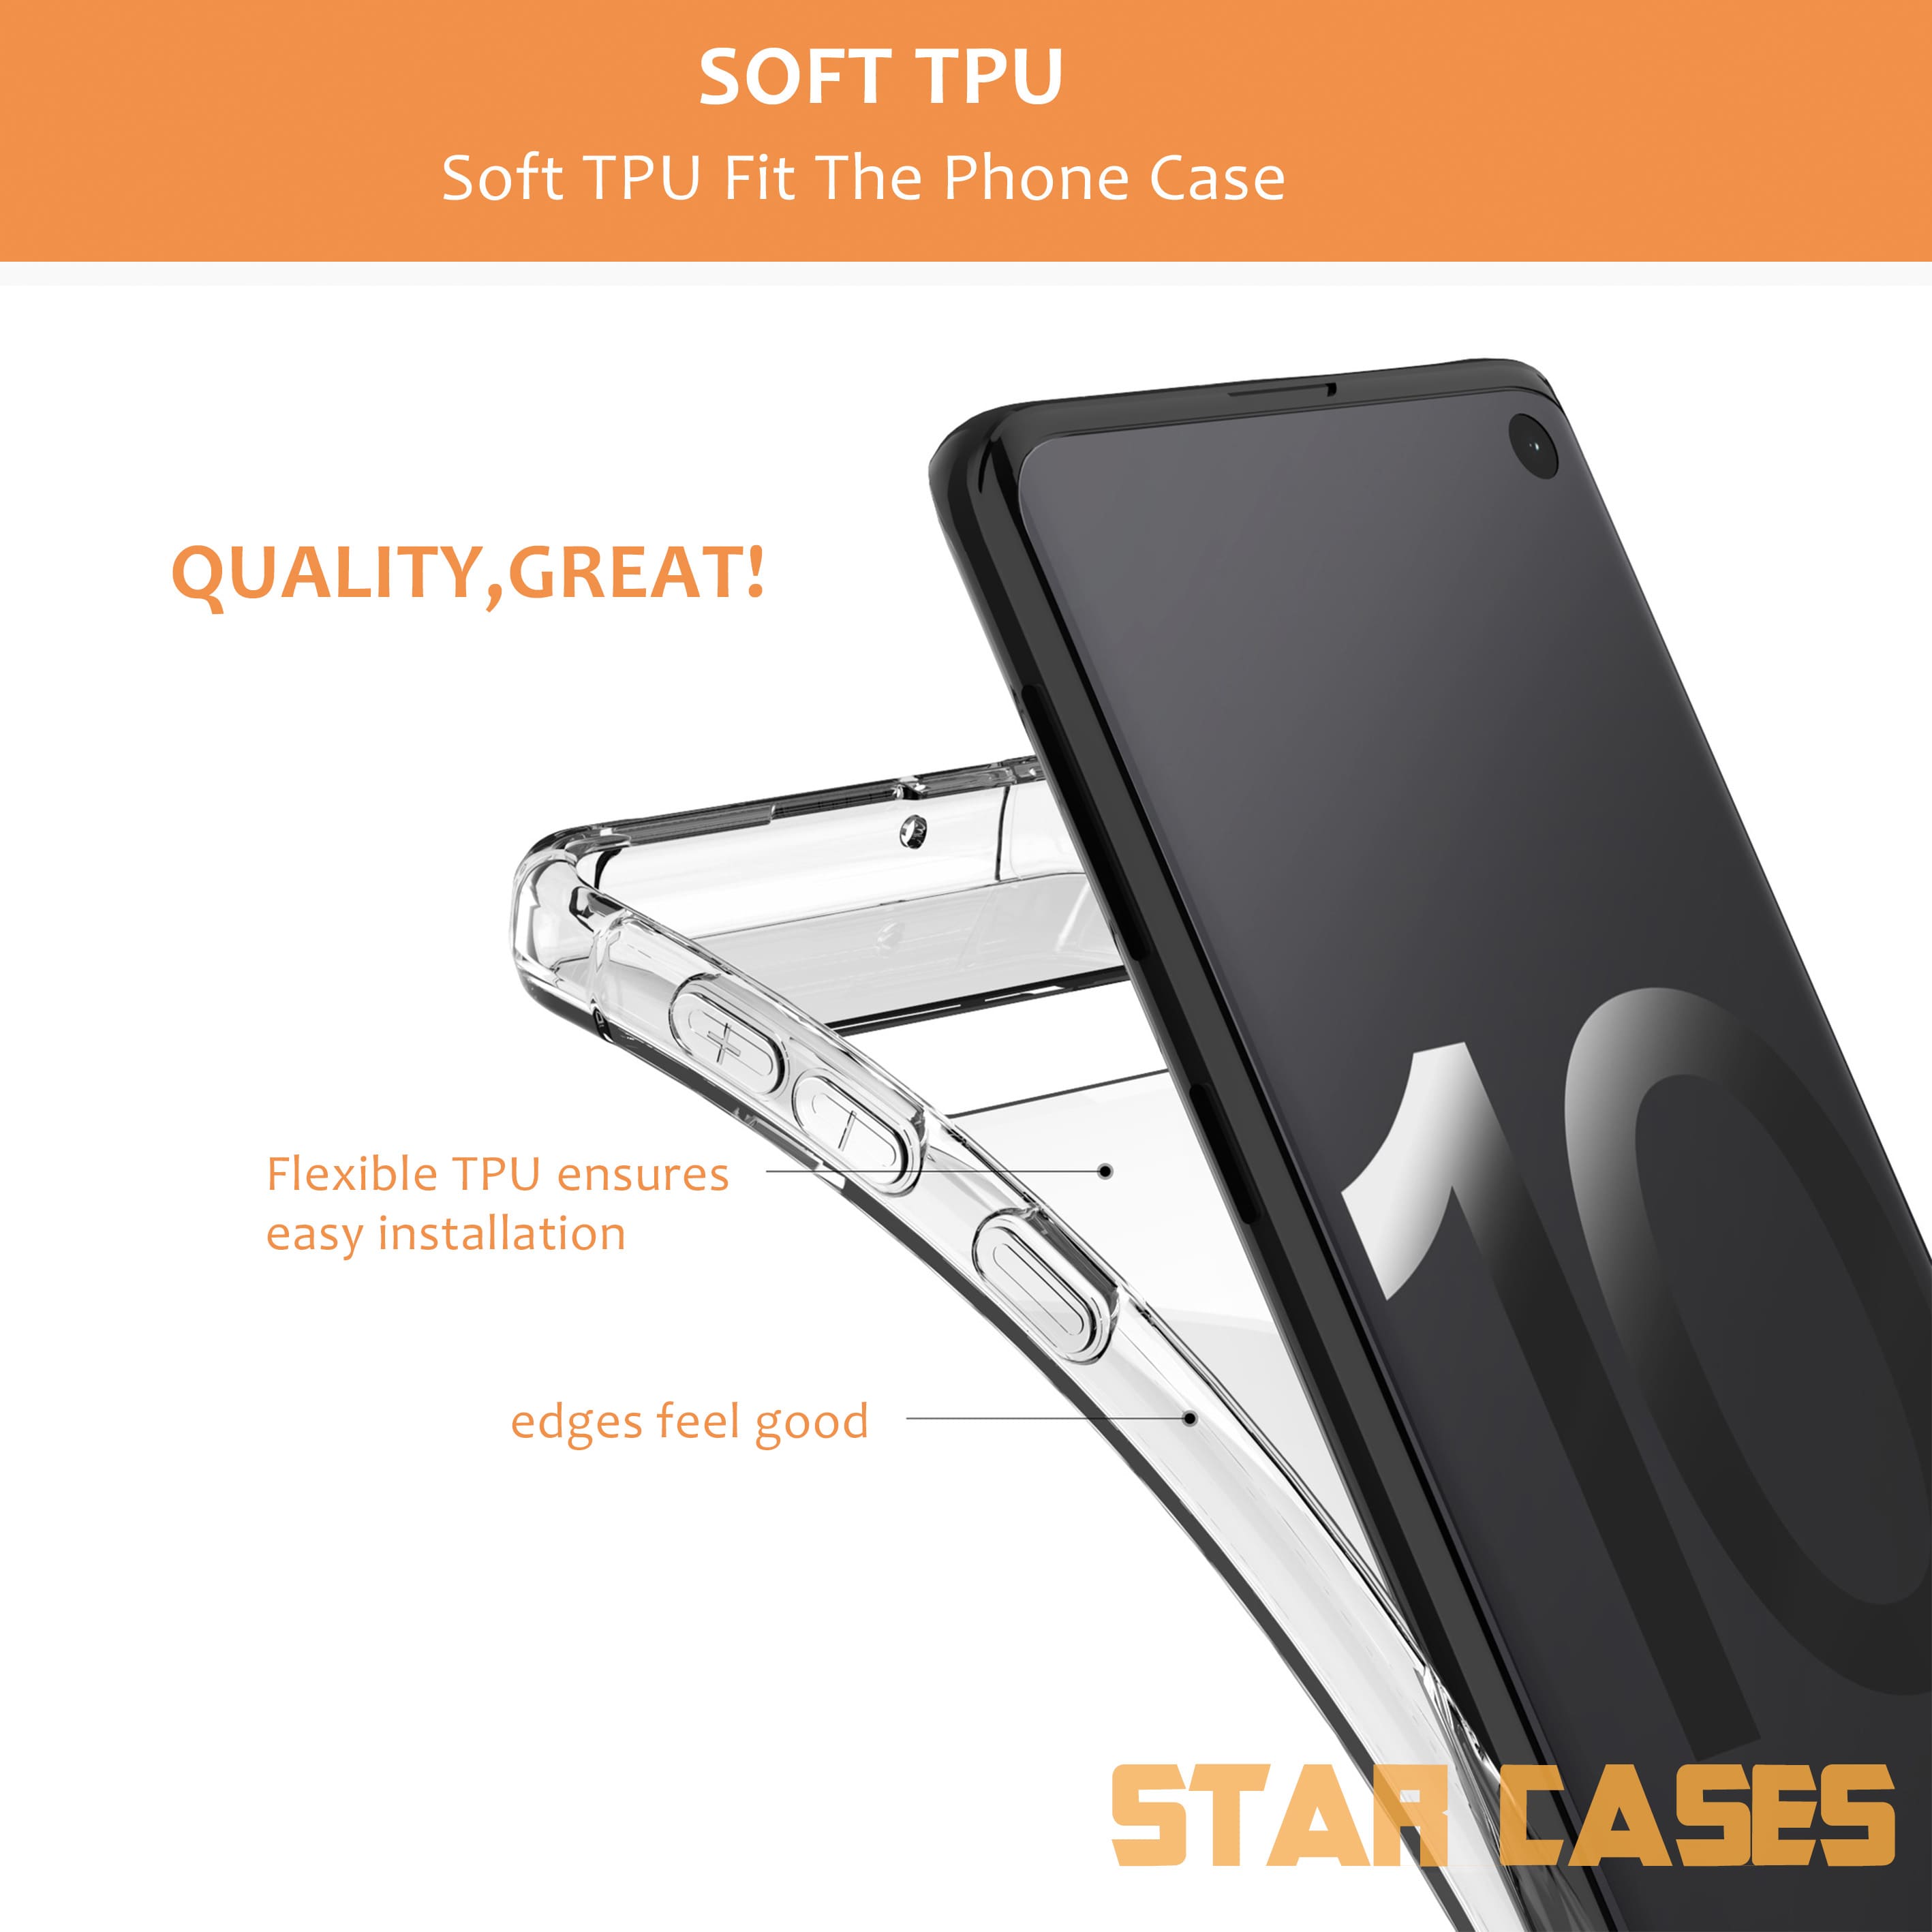 Samsung A11 Clear Soft Bumper Case